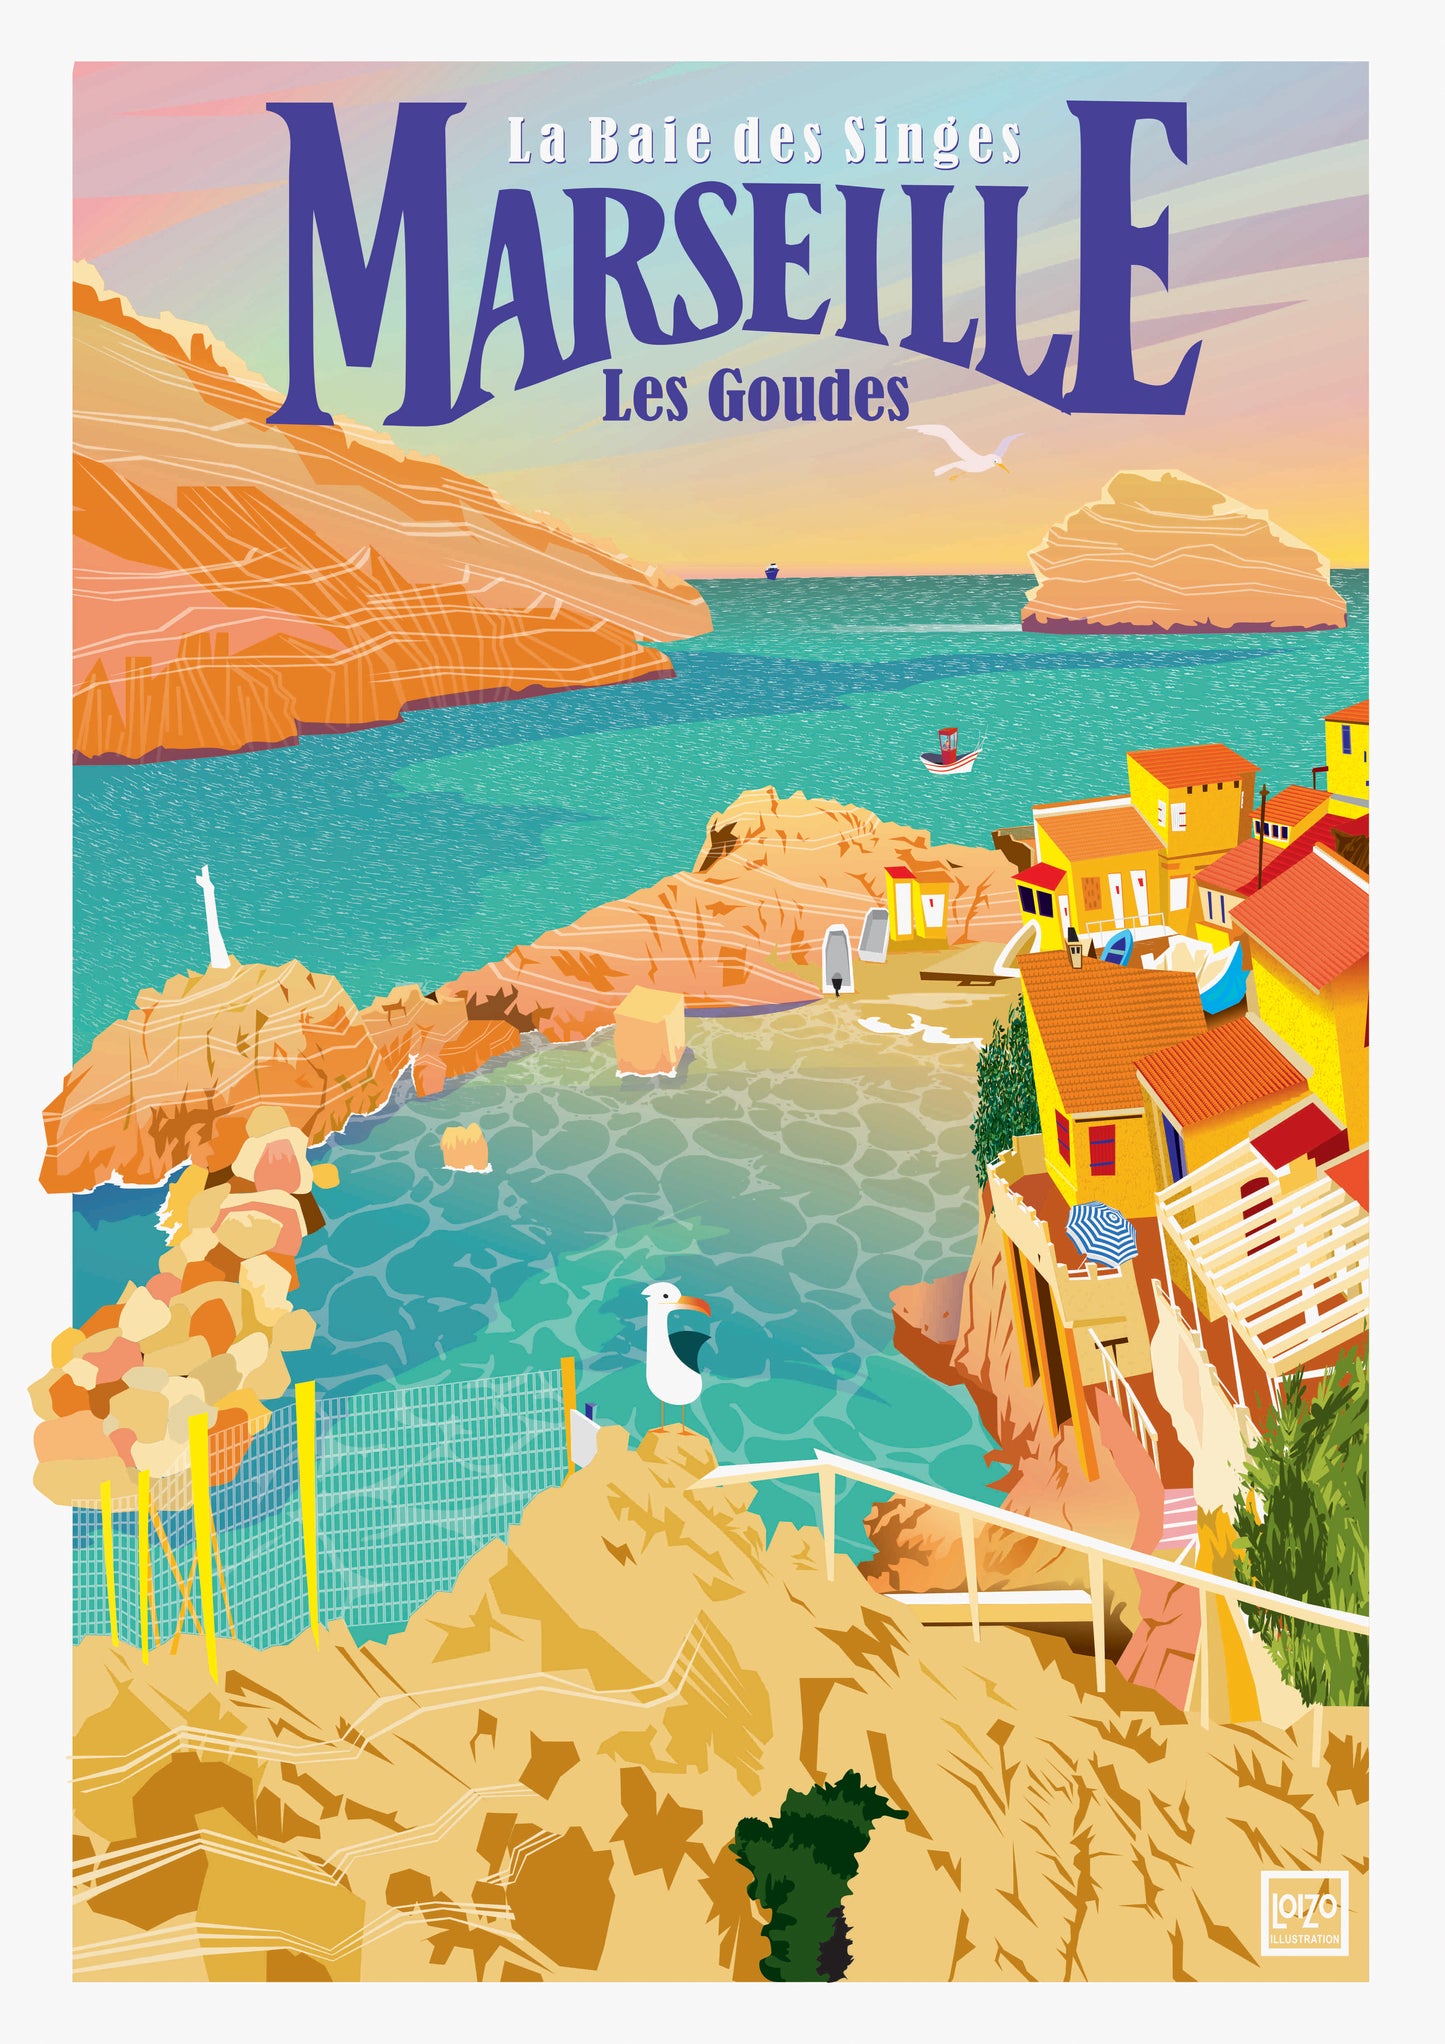 Marseille "Les Goudes" La baie des Singes